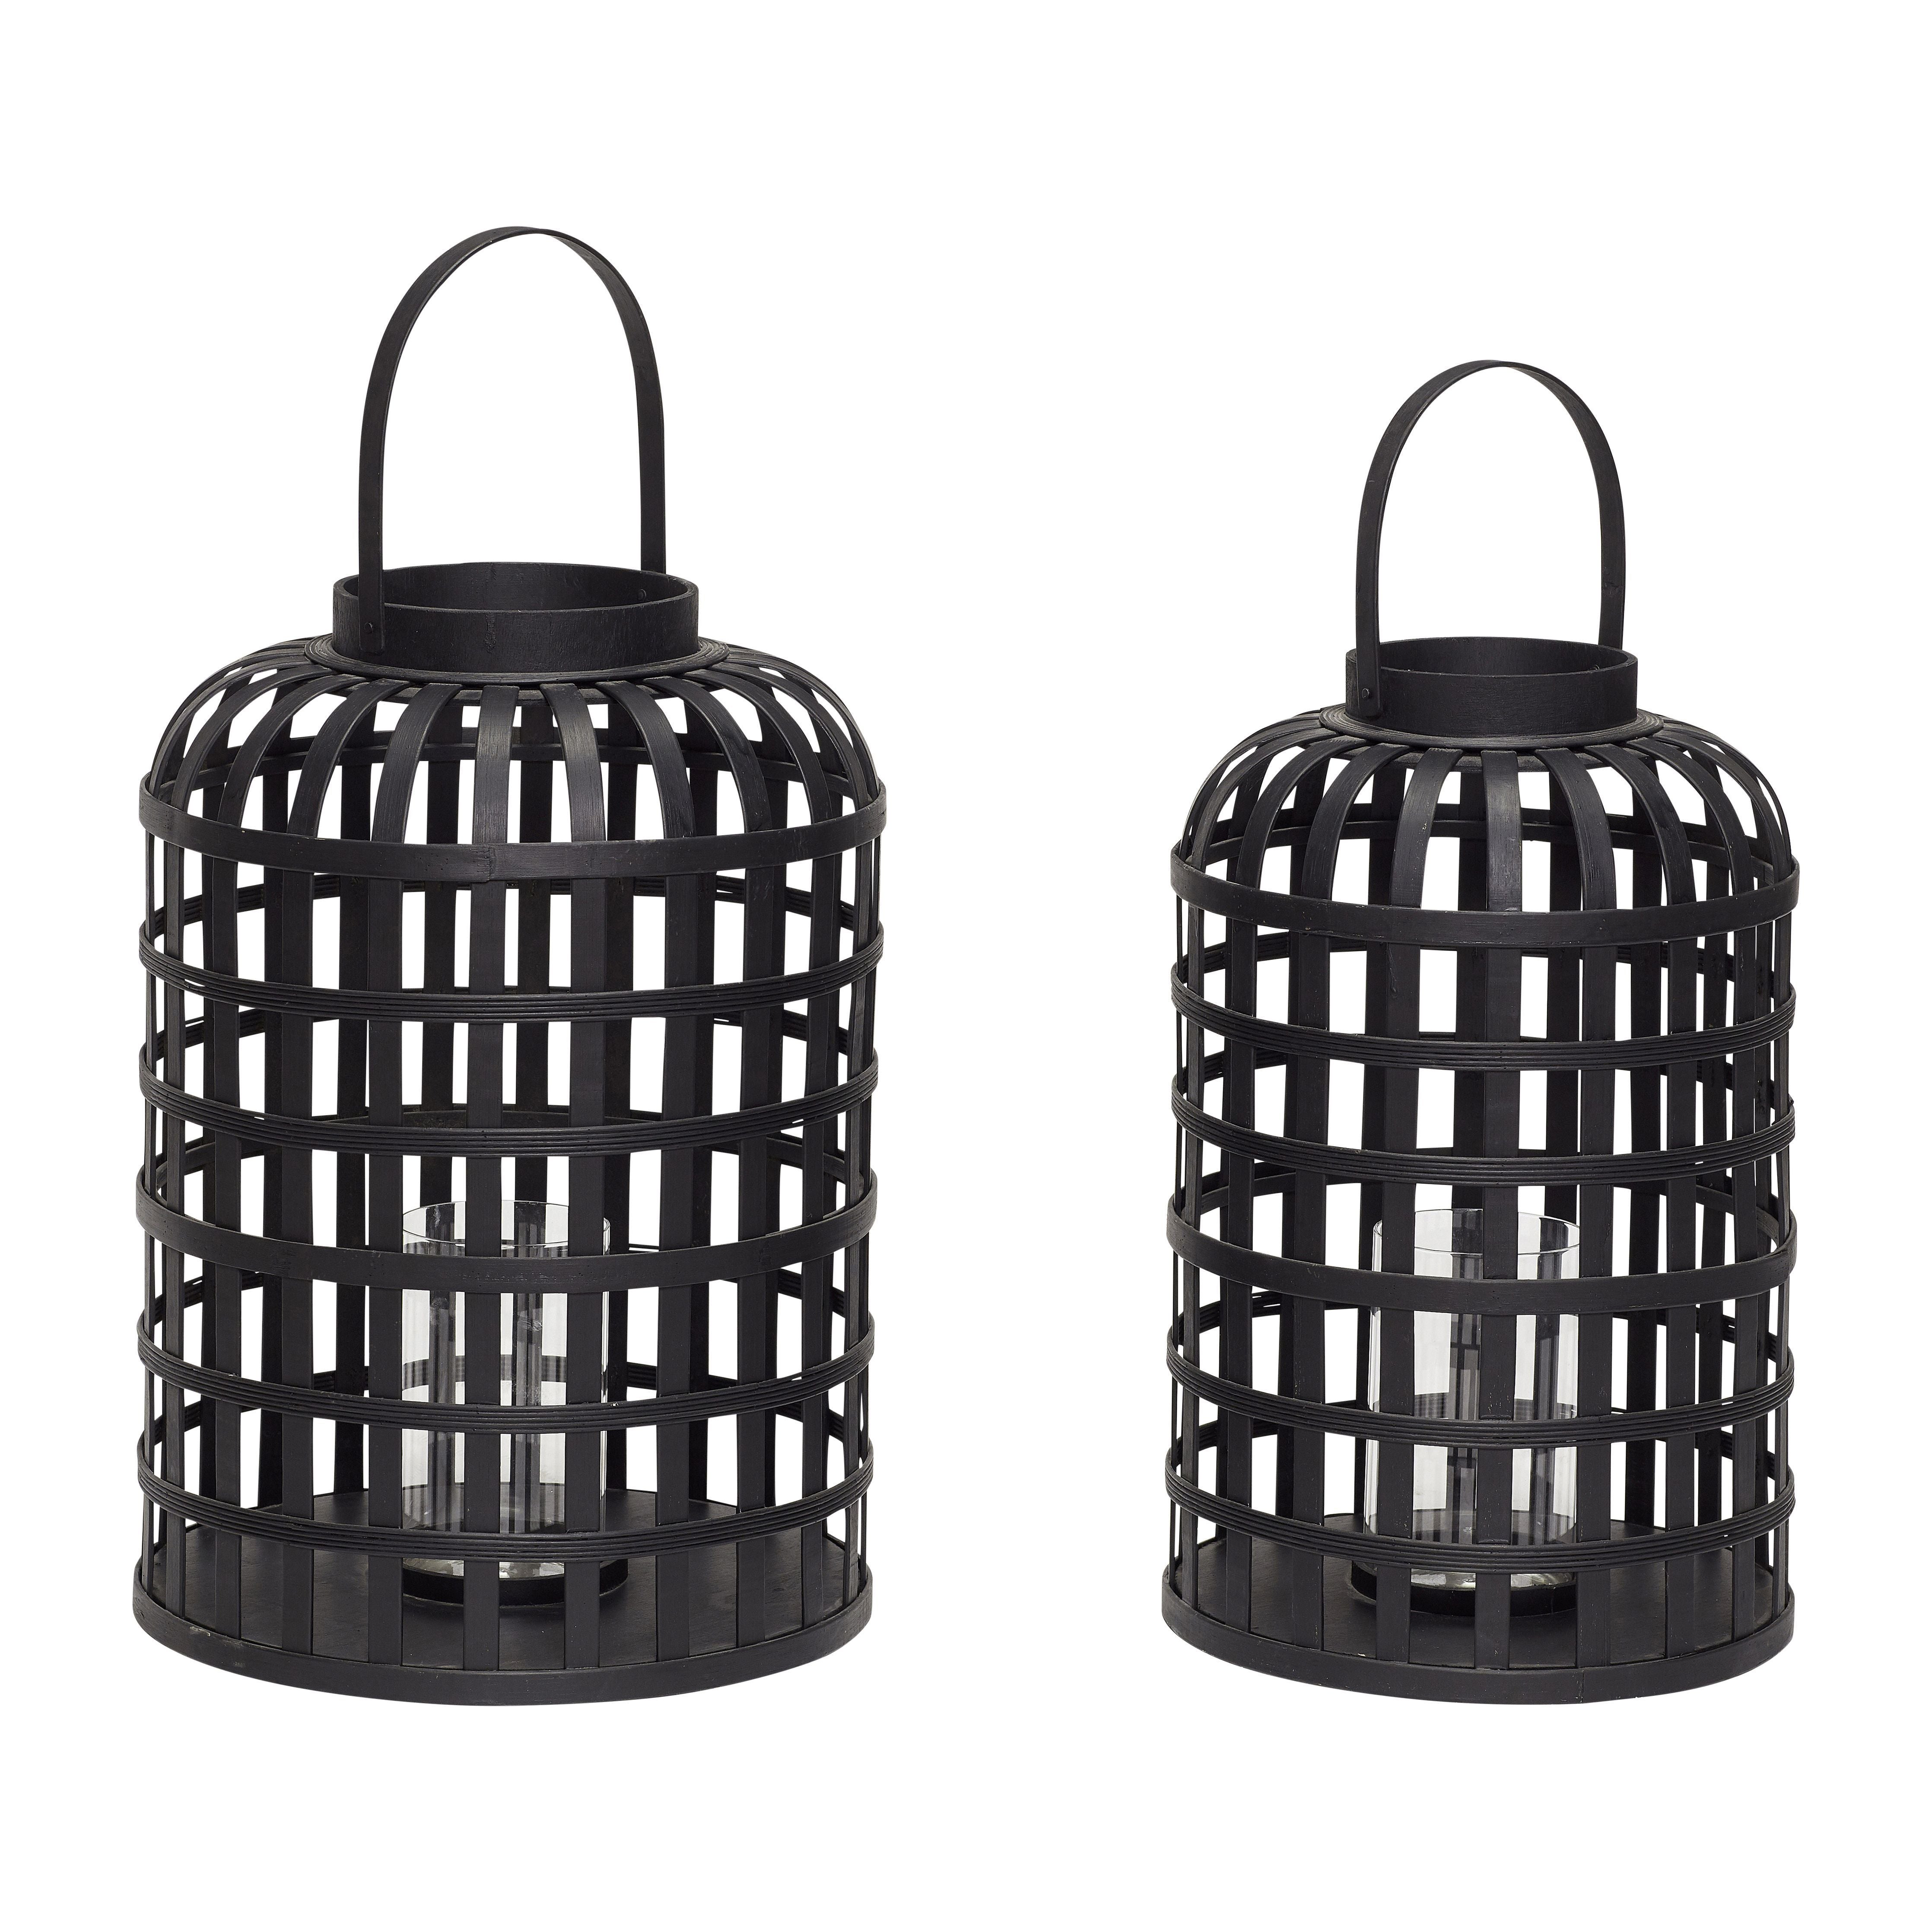 Hübsch Grid Lantern redonda Bamboo Black Juego de 2 de 2